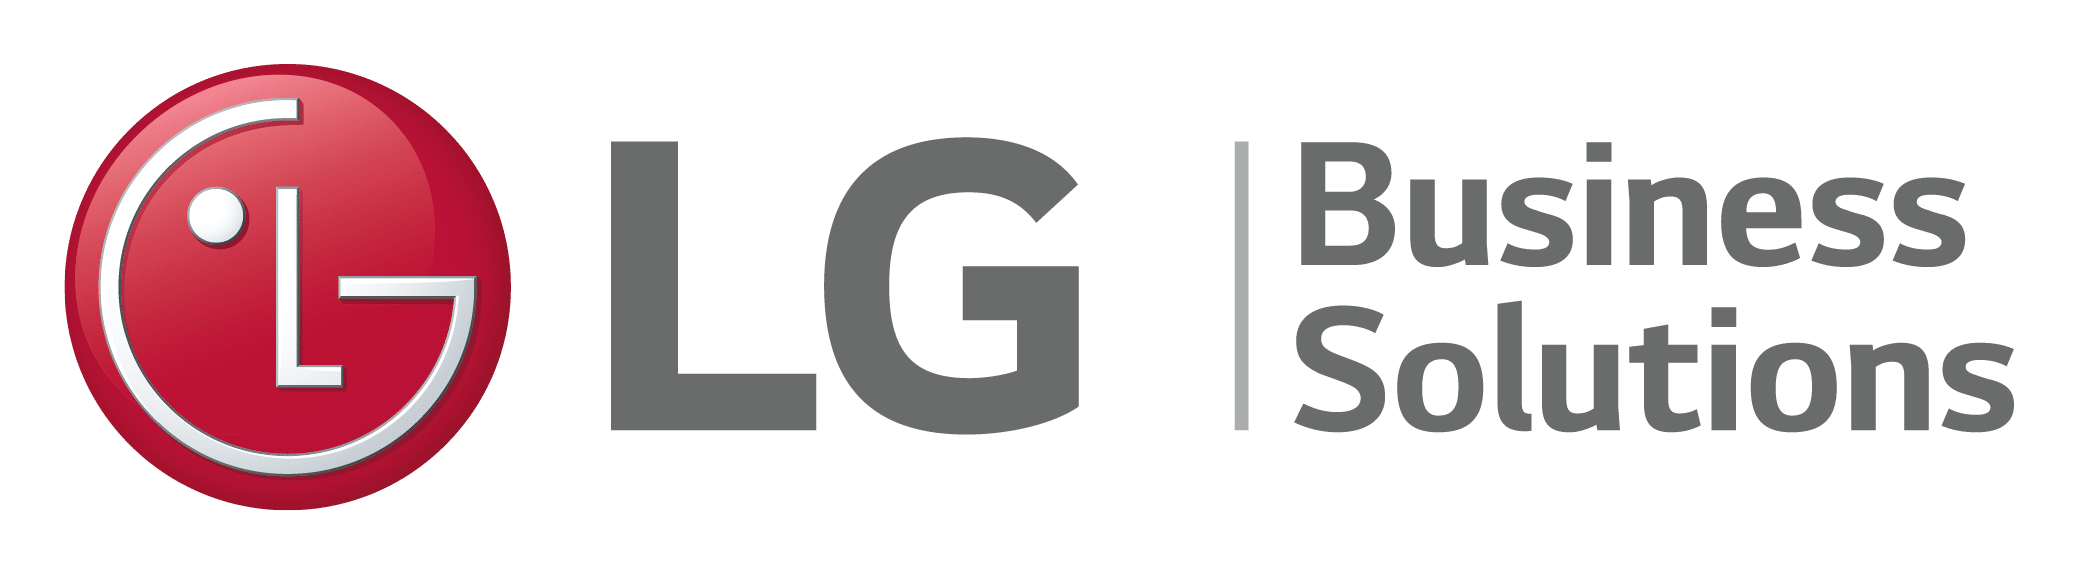 Logo: GB Business Solutions - Medientechnik, unter anderen Monitore und LED-Lösungen